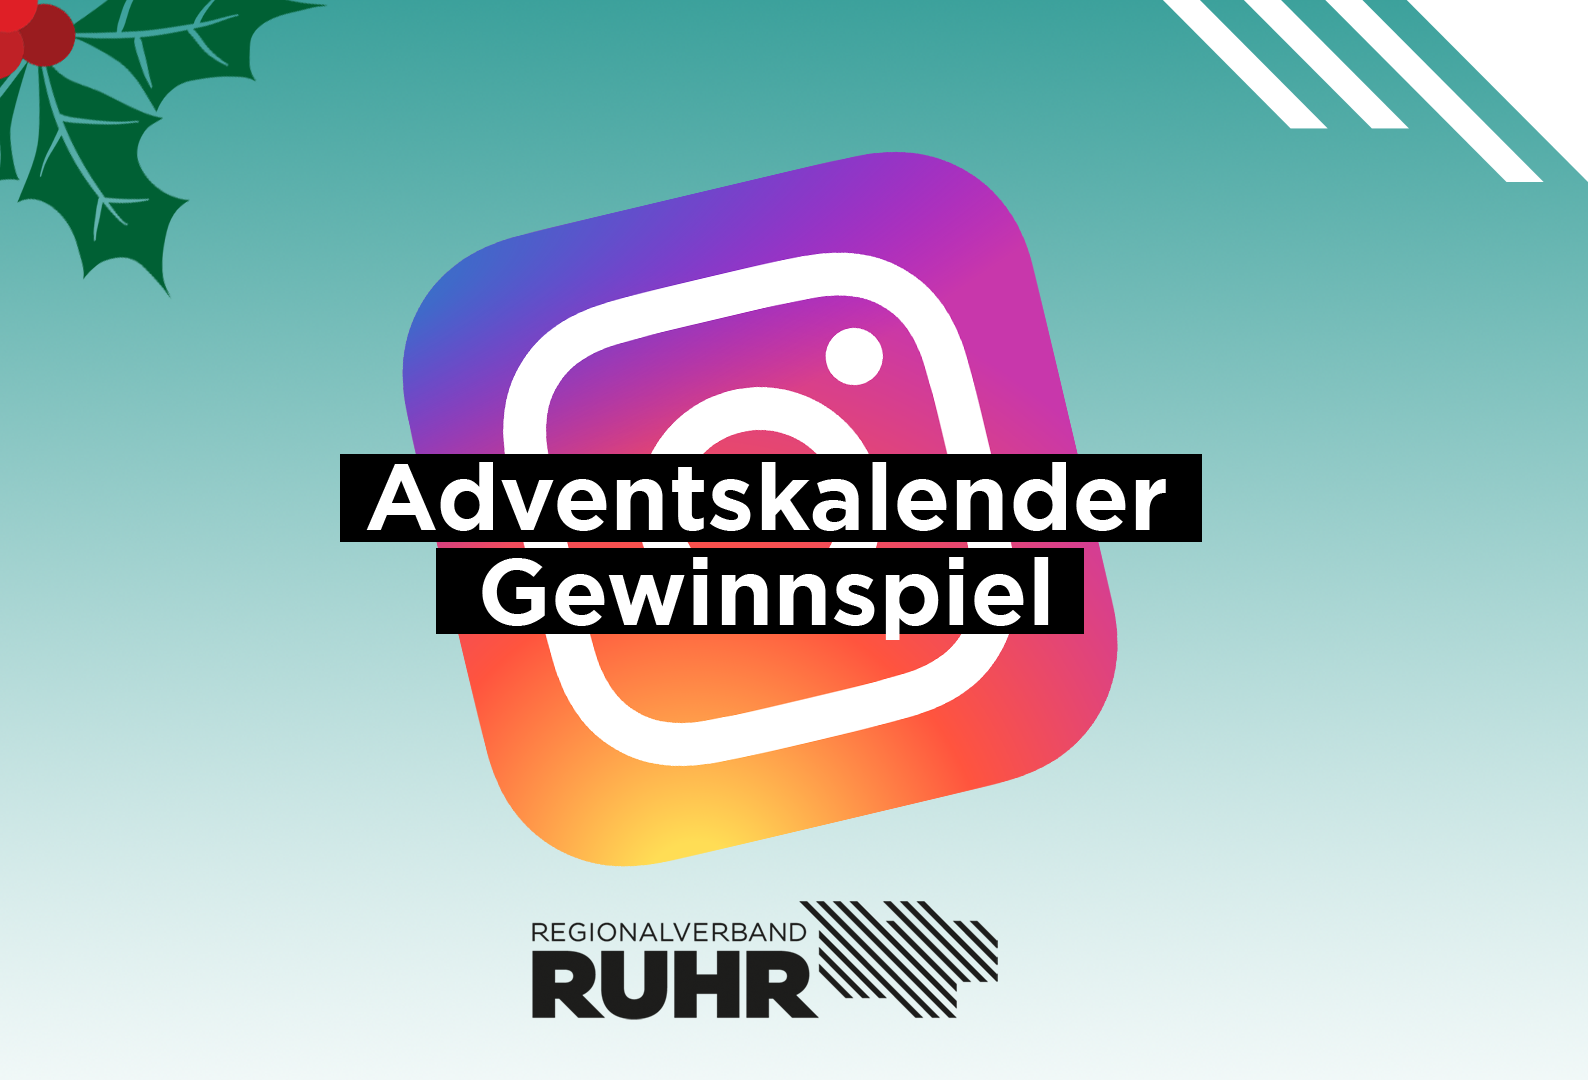 Der RVR öffnet an jedem Adventssonntag ein Türchen auf Instagram.